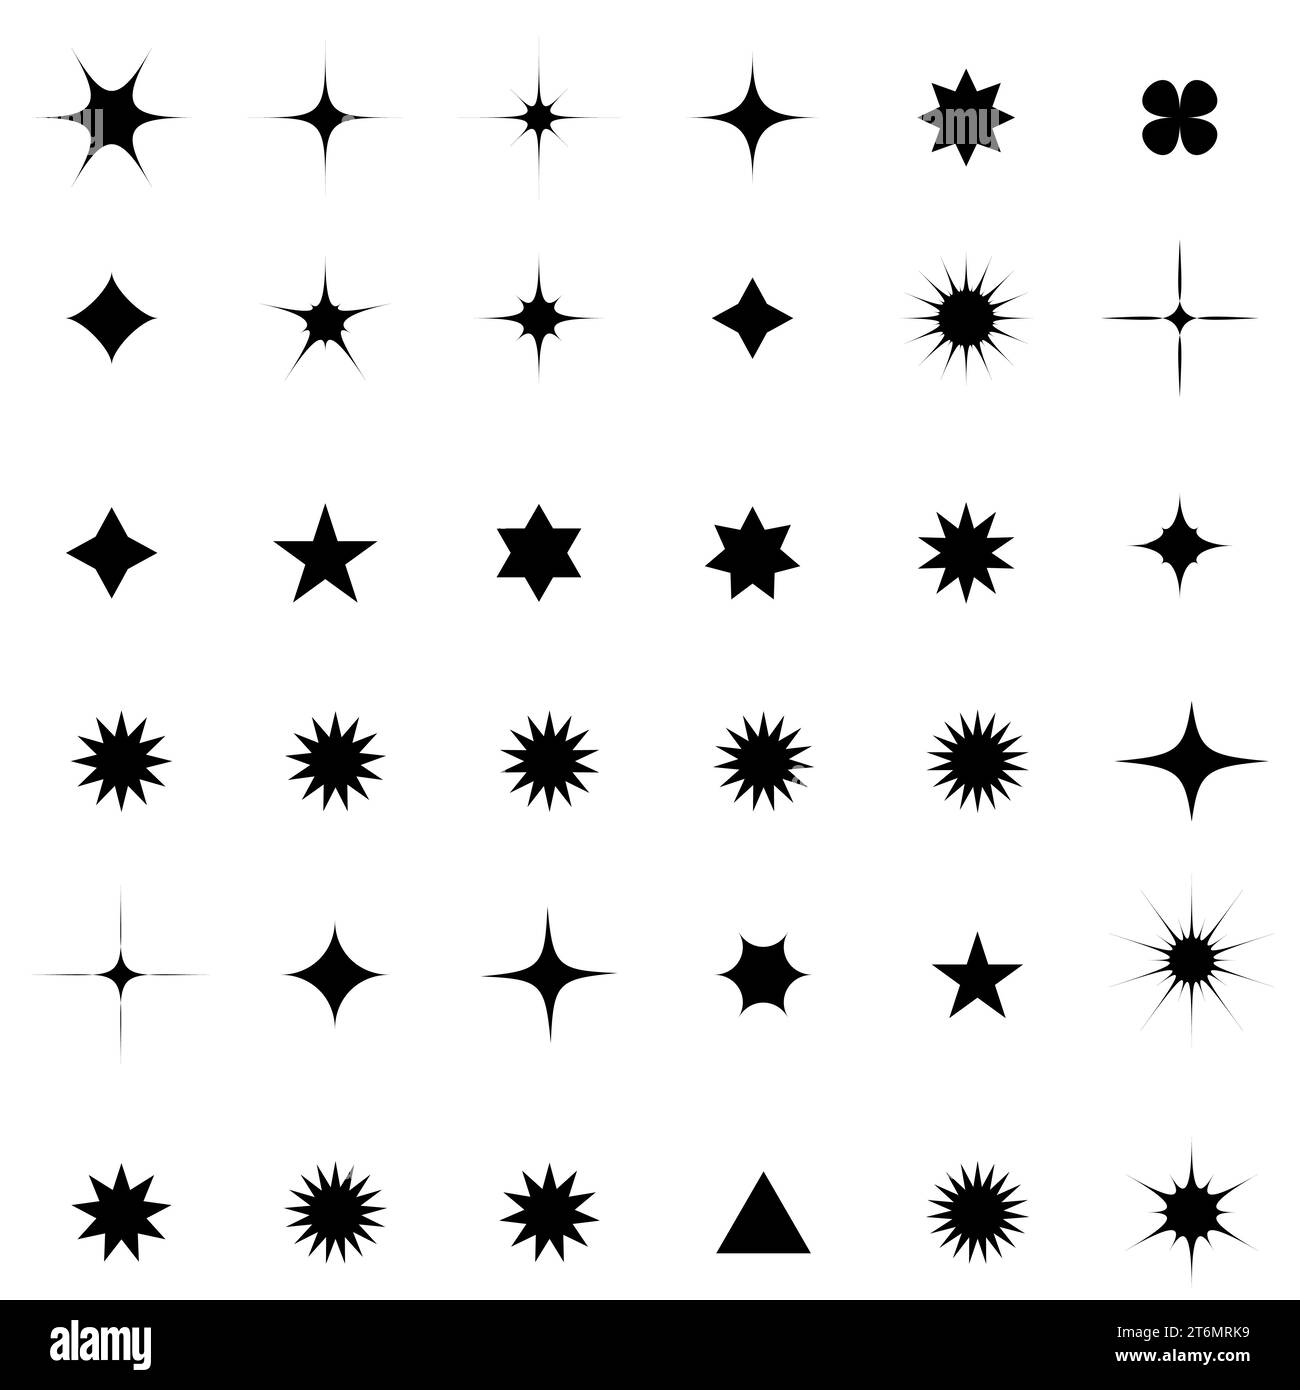 Eine Reihe von leuchtenden und leuchtenden Sternen, funkelnden Sternsymbolen und Sternen mit festlichen Dekorationspartikeln erzeugen einen abstrakten, geradlinigen Effekt. Funkelnder Stern Stock Vektor